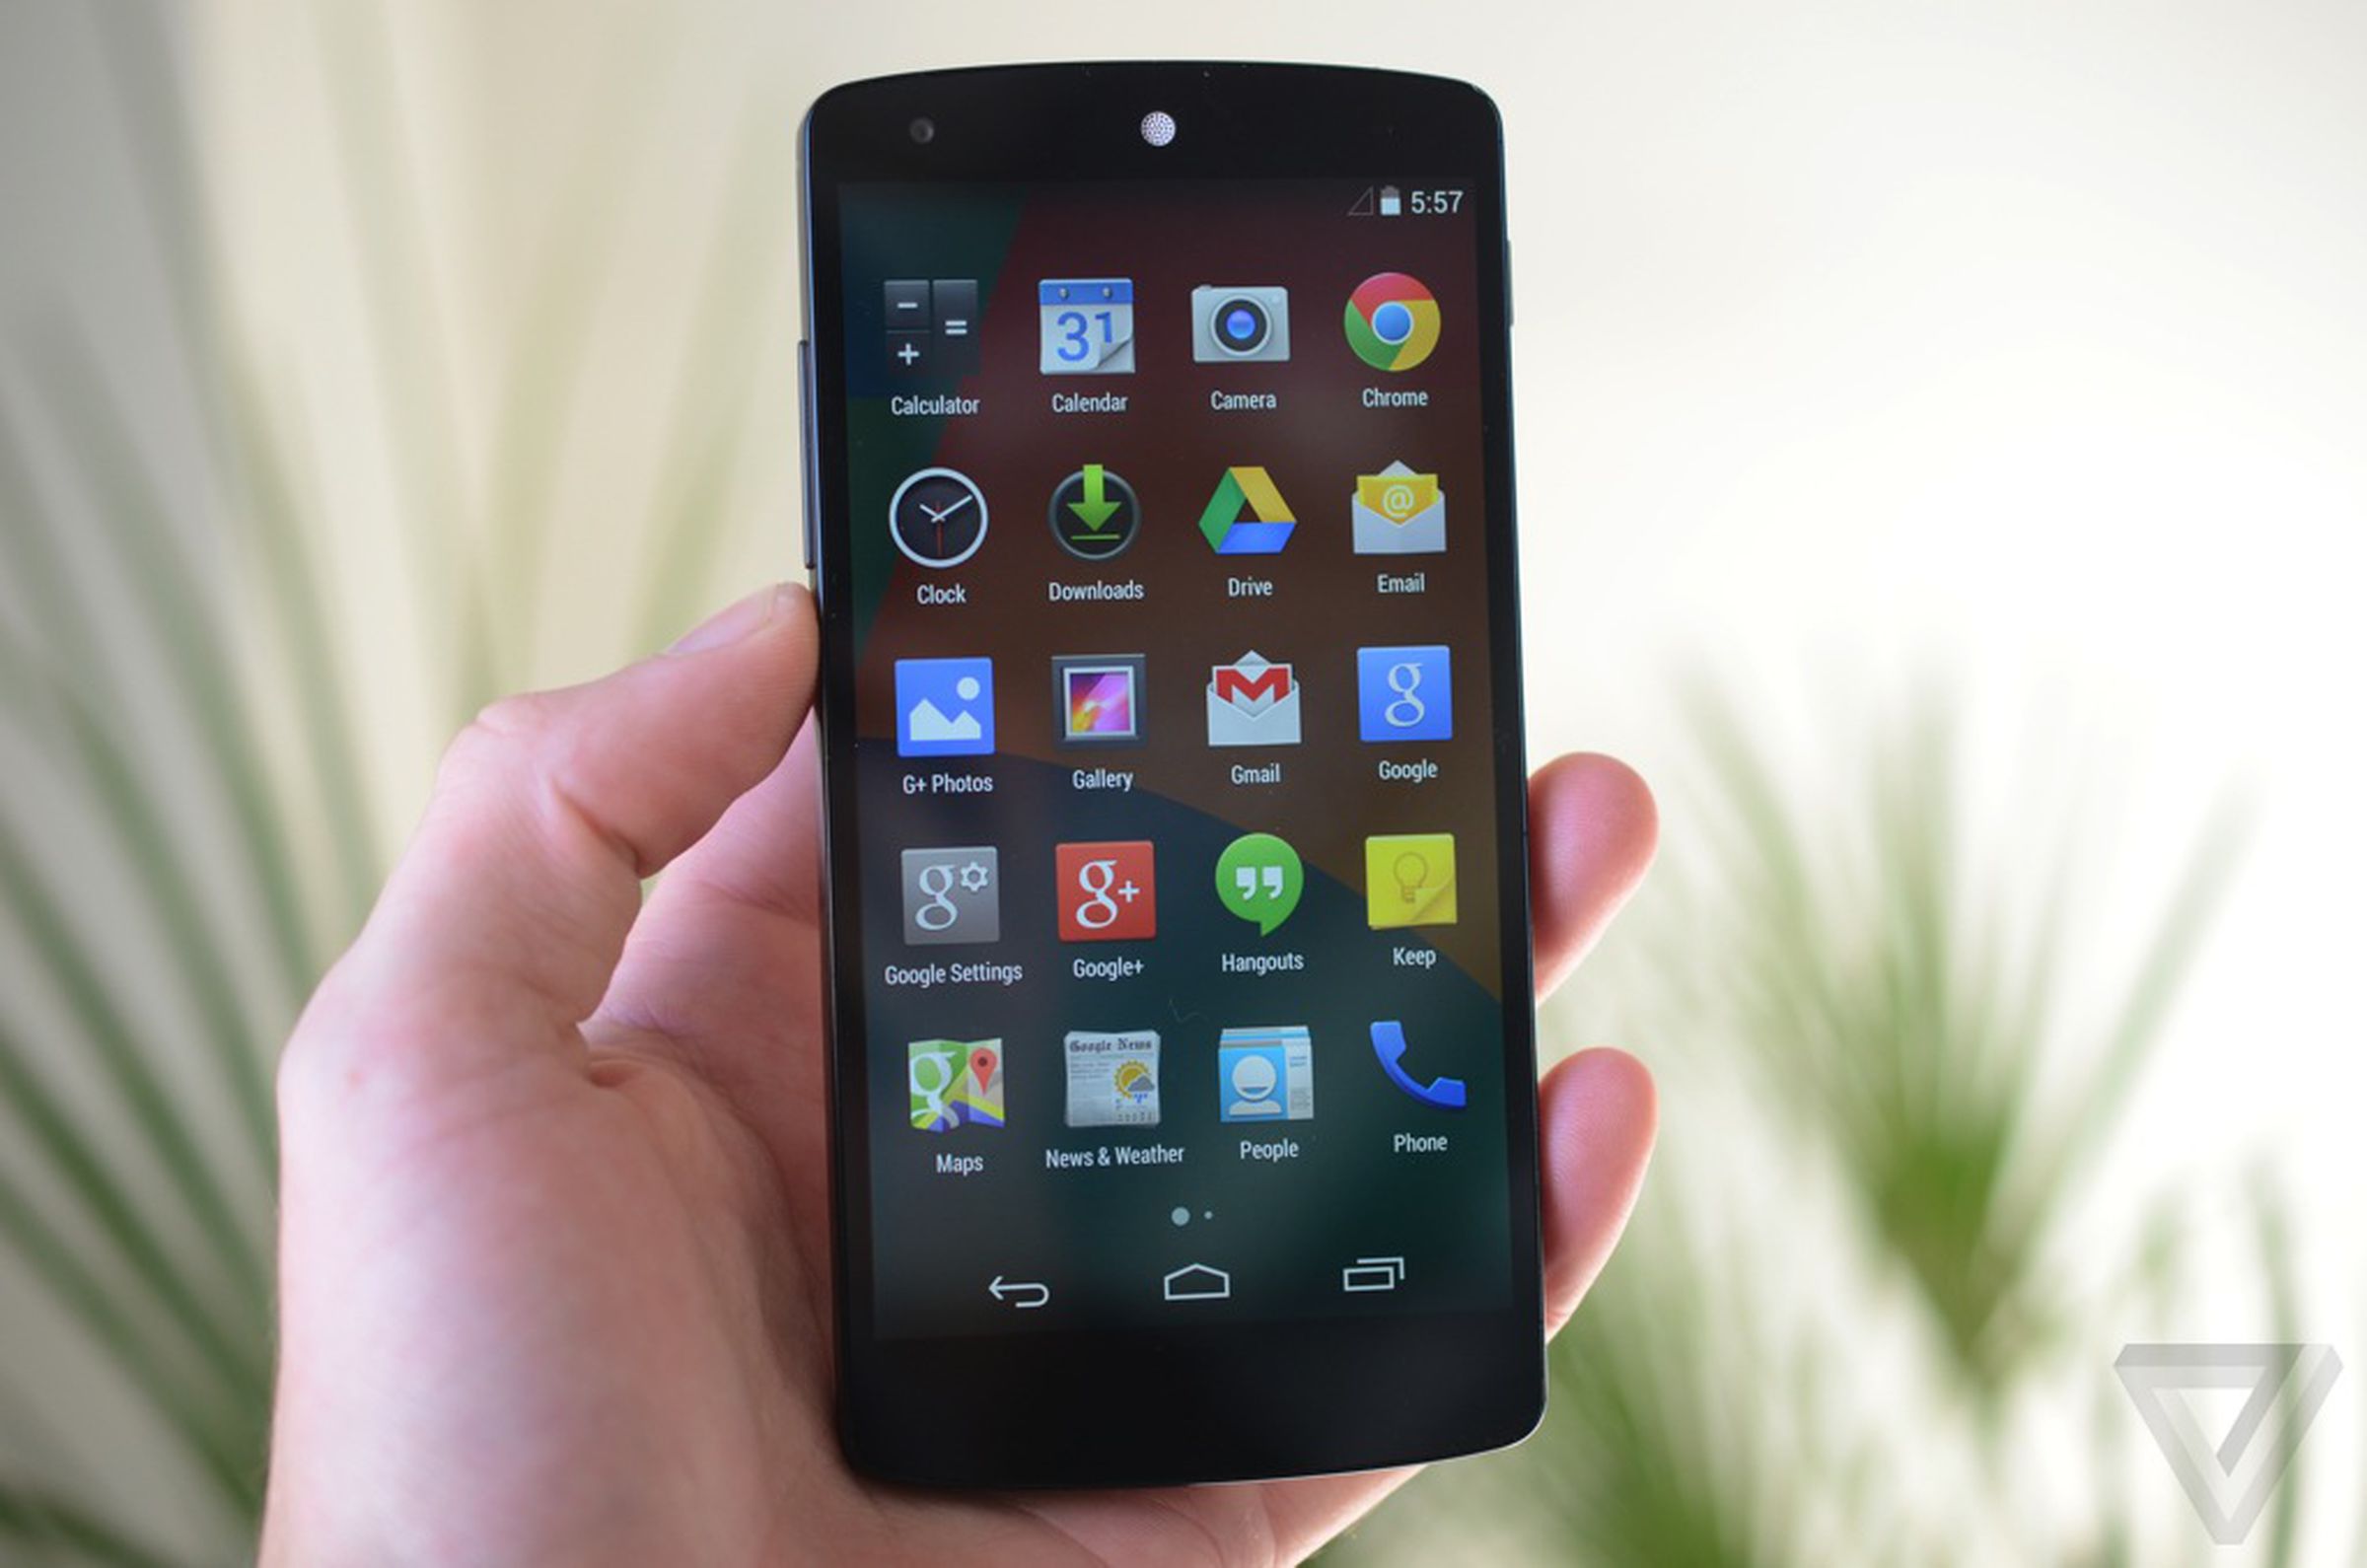 Nexus 5 hands-on photos